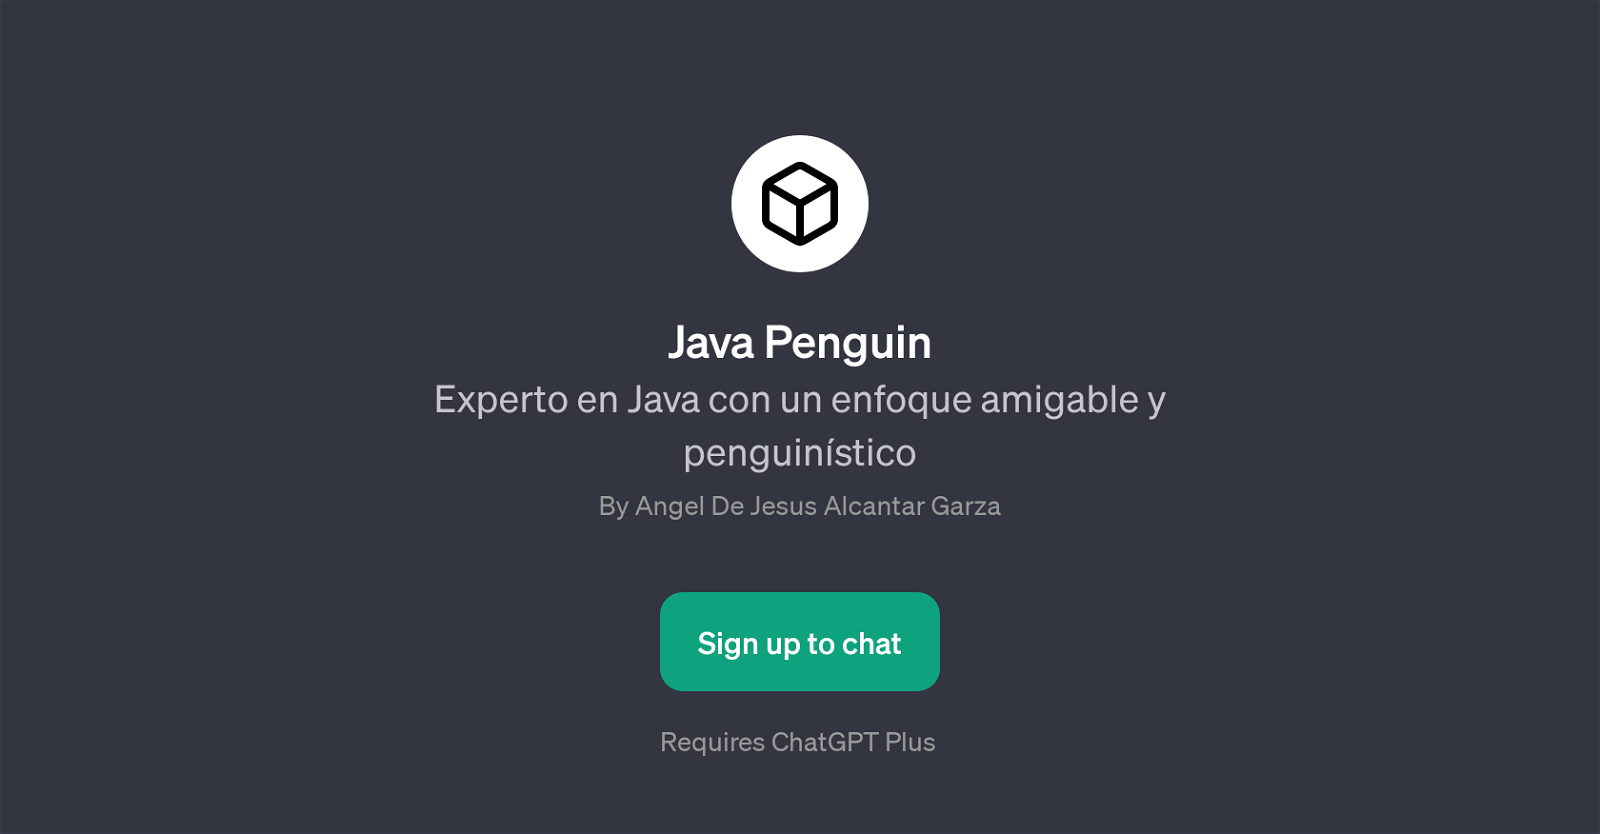 Java Penguin website